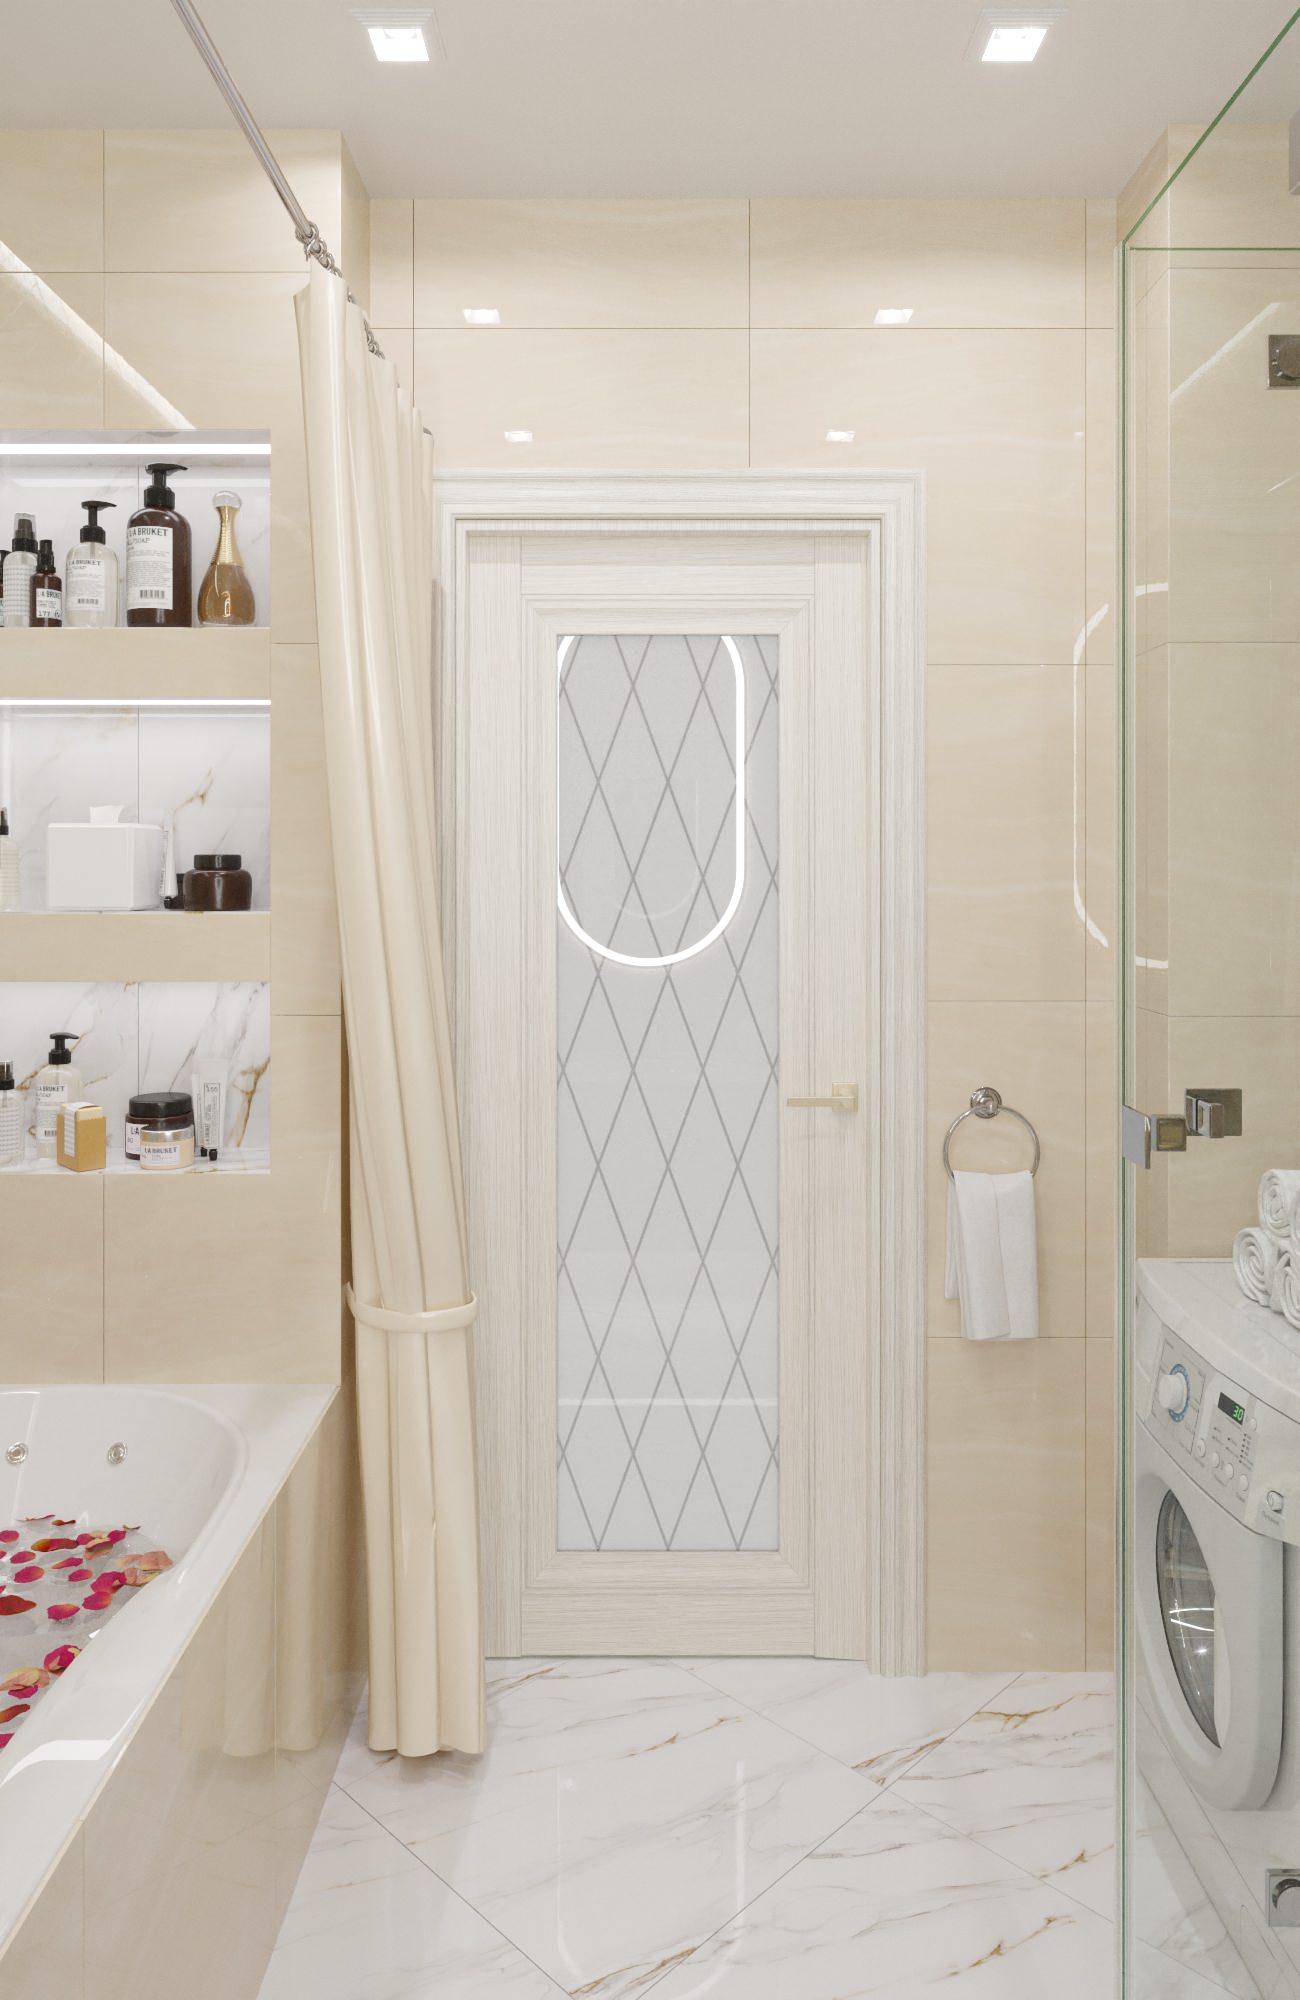 Интерьер ванной с зеркалом на двери и дверными жалюзи в неоклассике